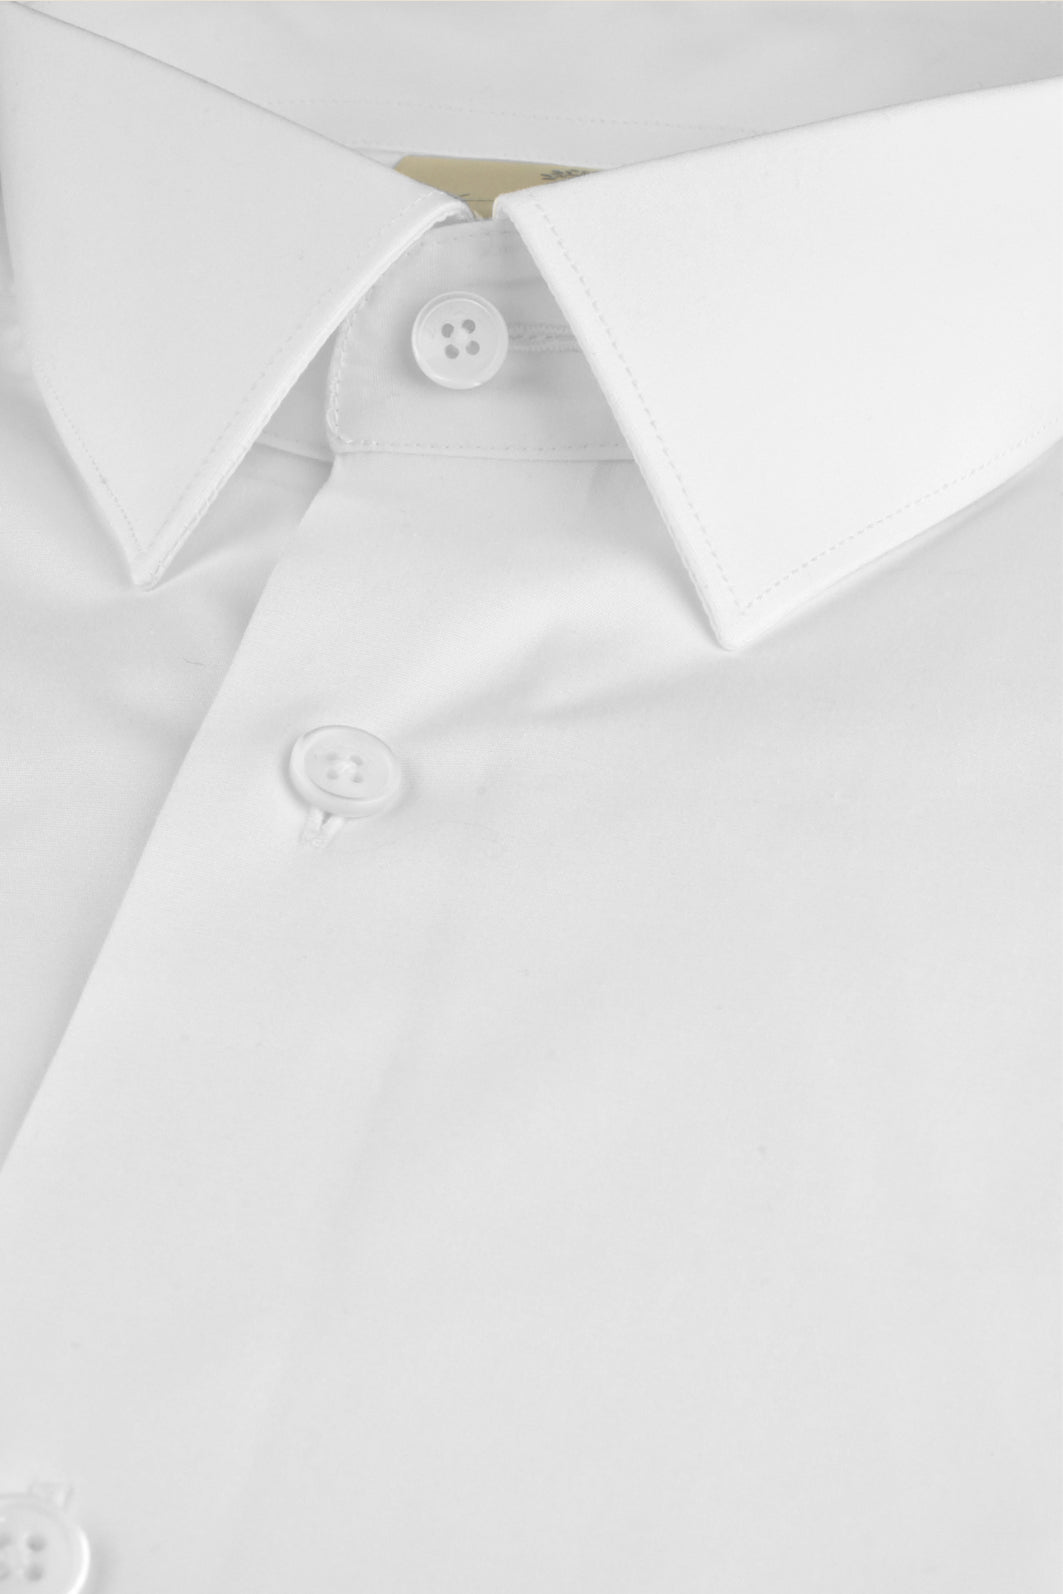 Weisses Business - Hemd aus Bio - Baumwolle mit klassischem Kragen- Made to order